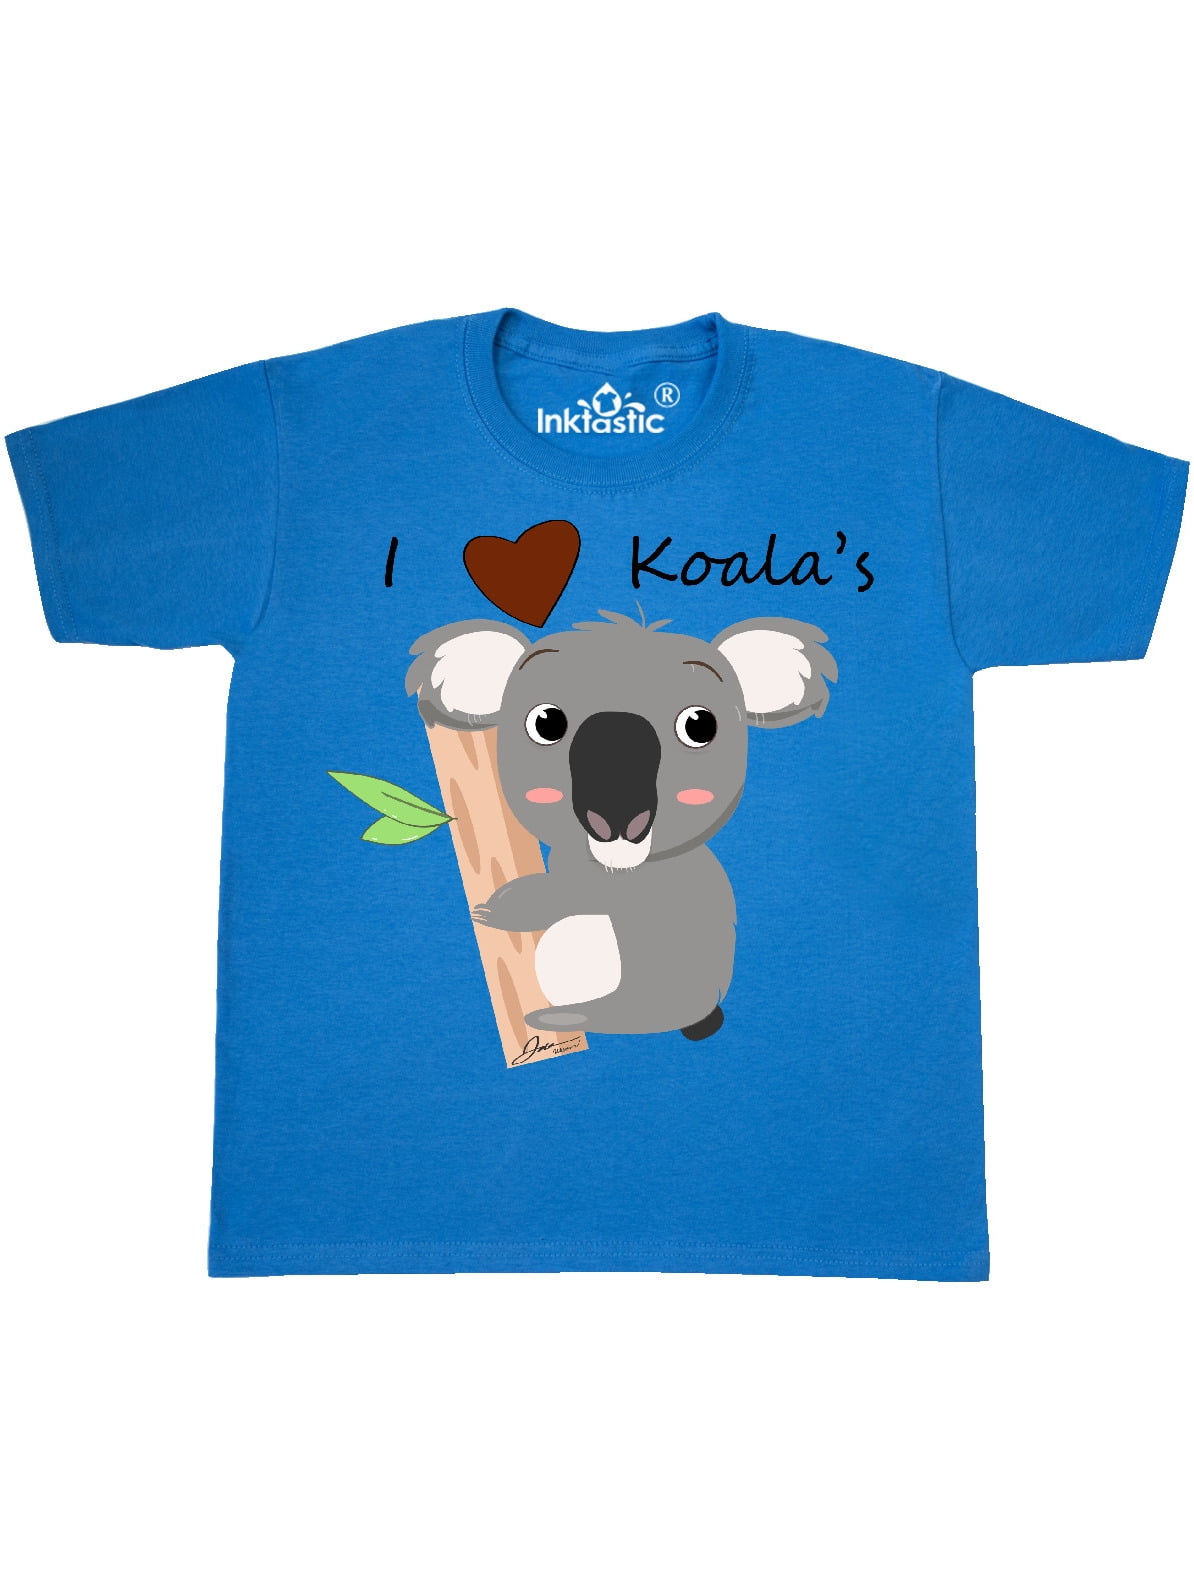 I LOVE KOALAS kids koala tshirt